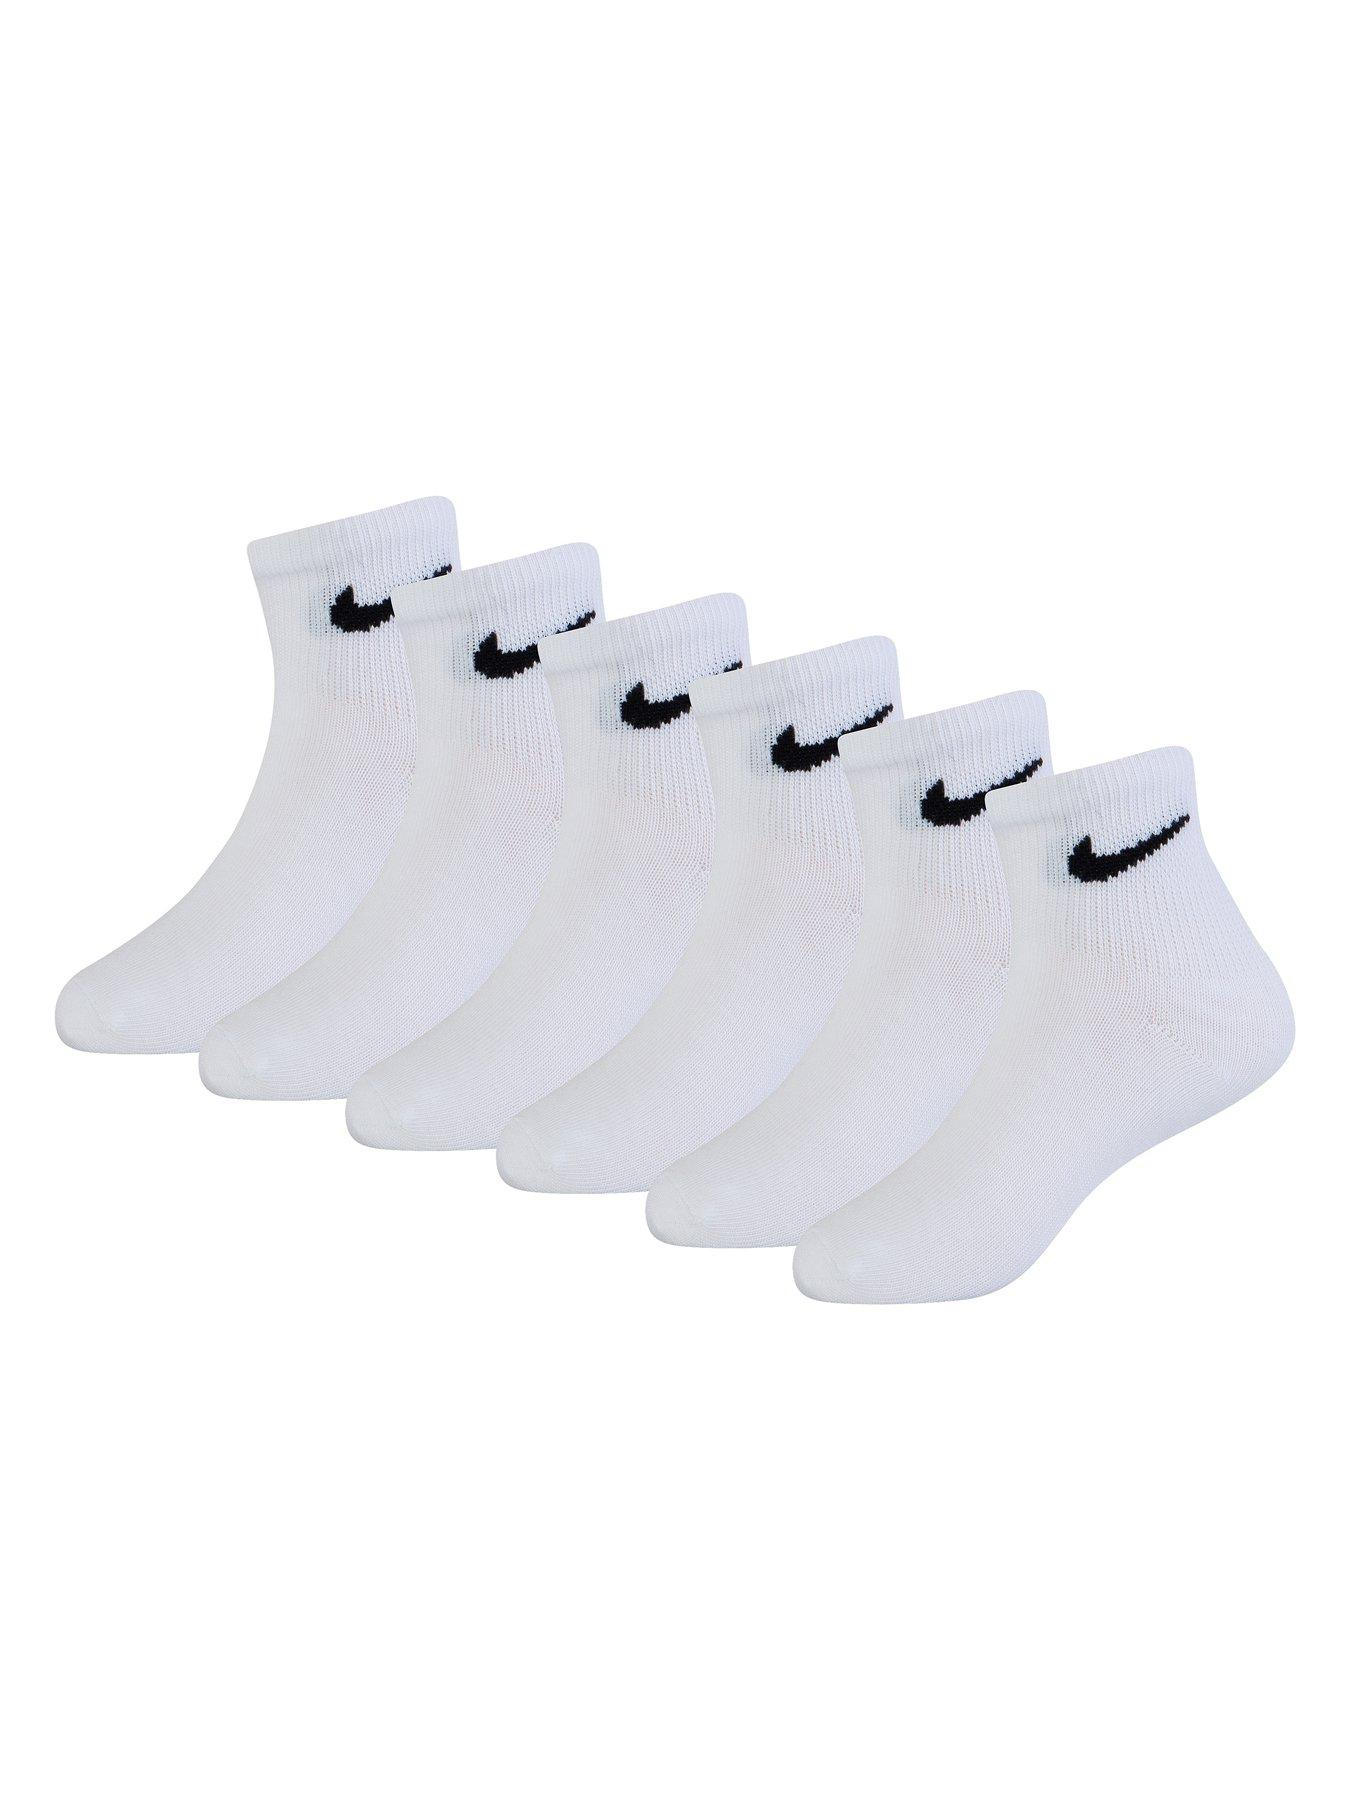 Nike Kids Unisex 6 Pack Ankle Socks - White | very.co.uk